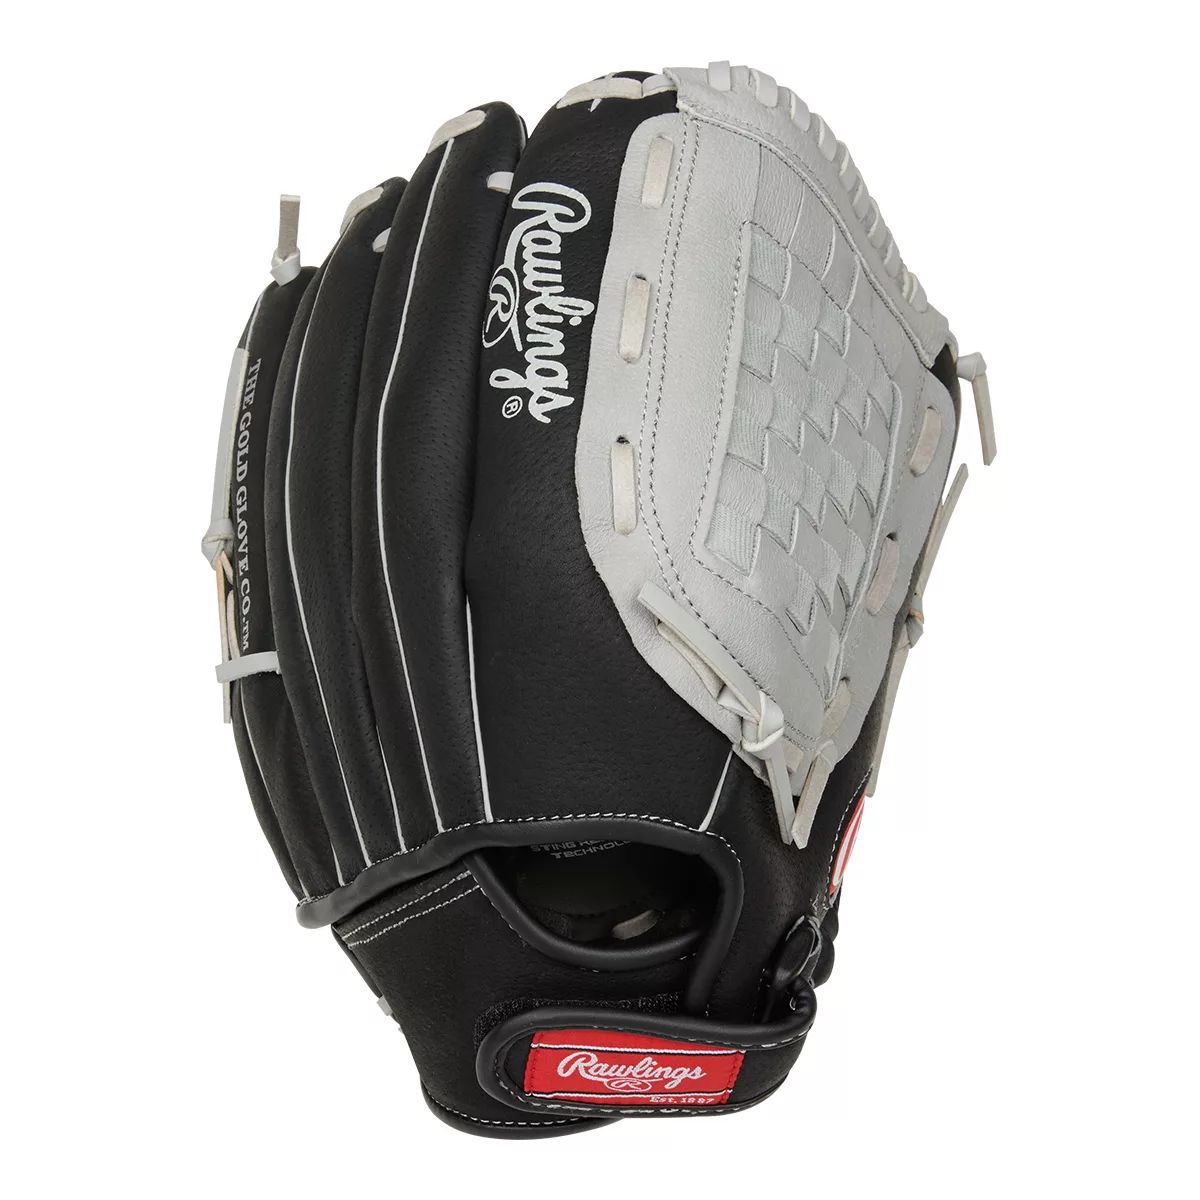 Image of Rawlings Sure Catch 13" Baseball/Softball Glove